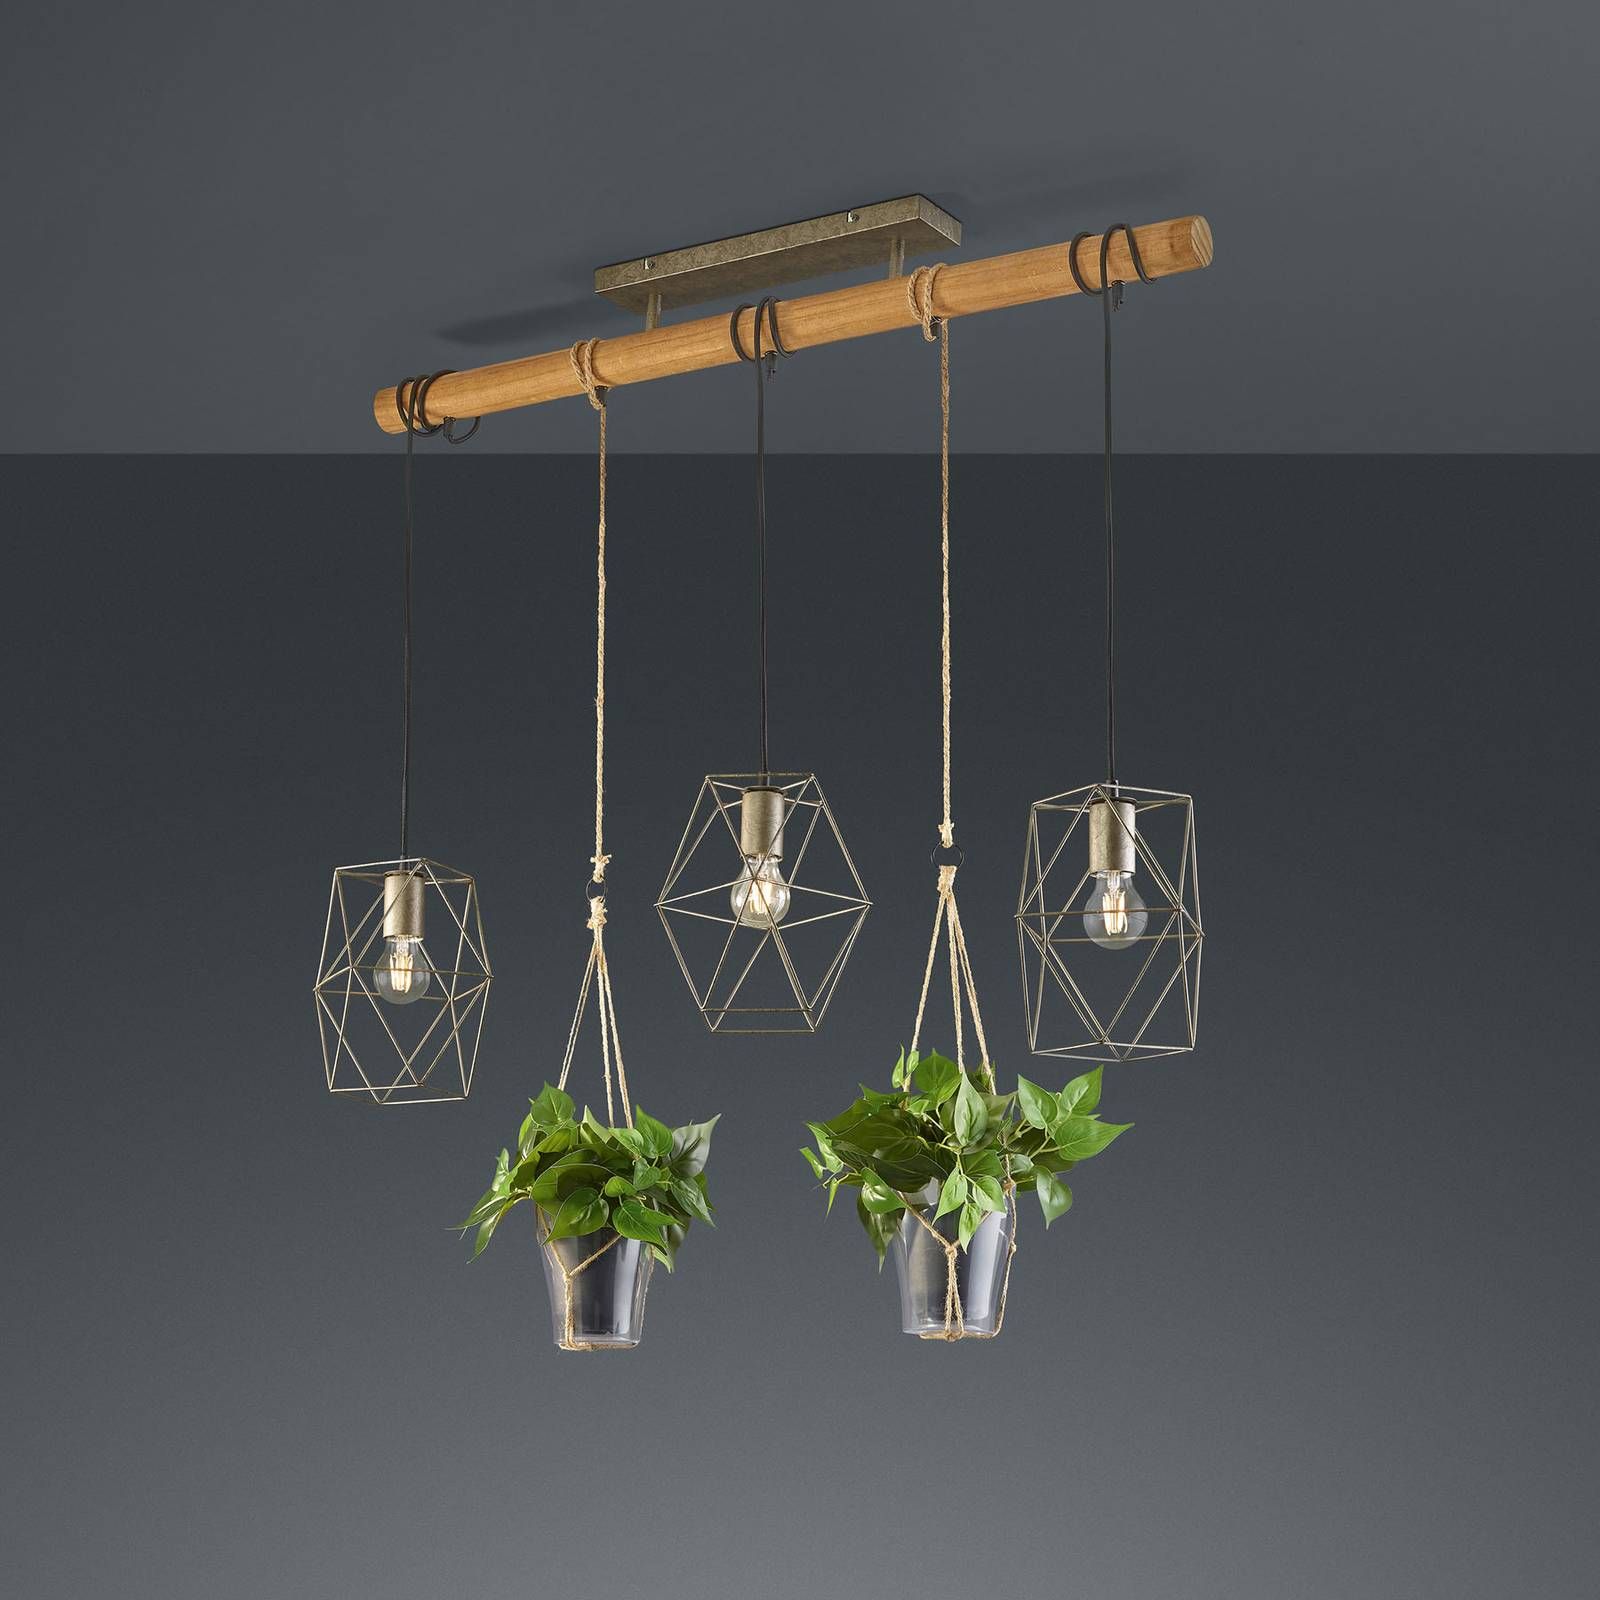 Trio Lighting Závesná lampa Plant, 3-pl. so sklami na dekoráciu, Obývacia izba / jedáleň, kov, sisal, sklo, drevo, E27, 10W, P: 115 cm, L: 22 cm